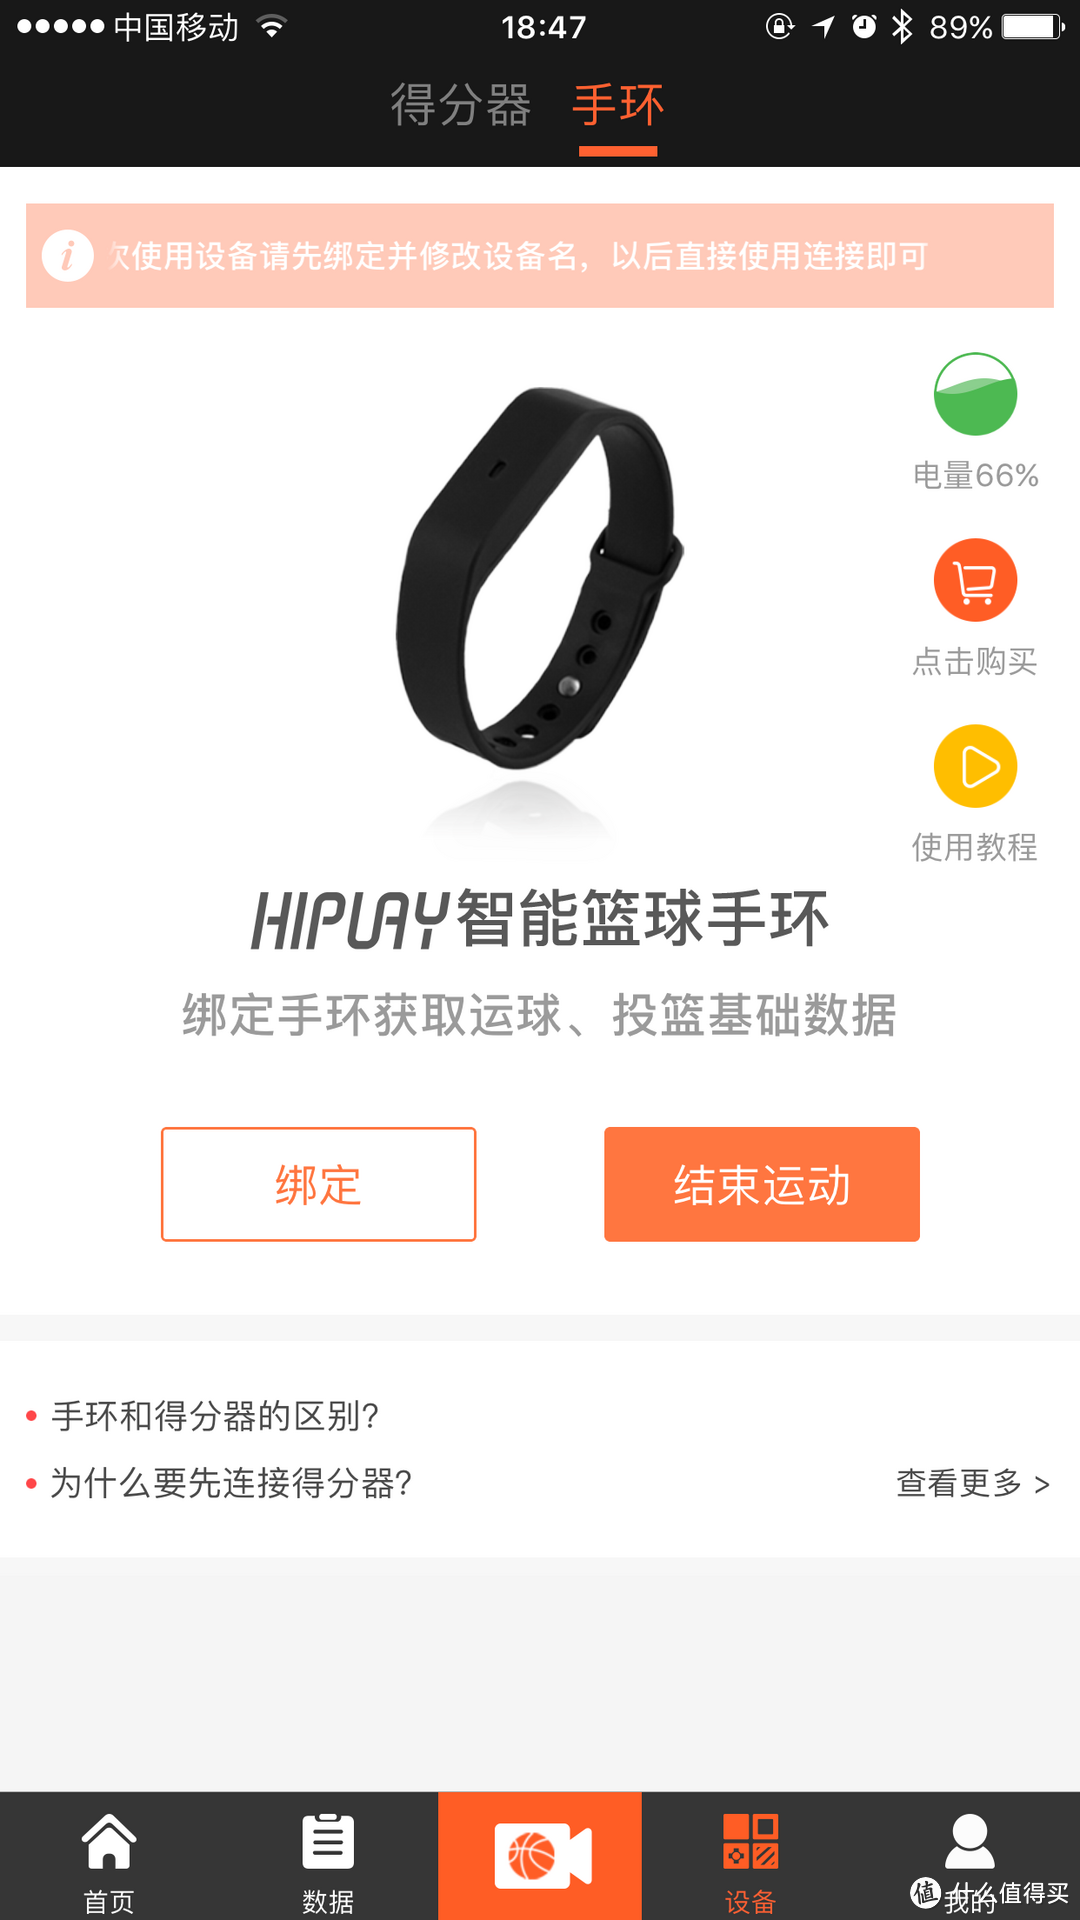 爱打篮球的你或许需要这样一款手环——HIPLAY智能篮球运动套装使用体验